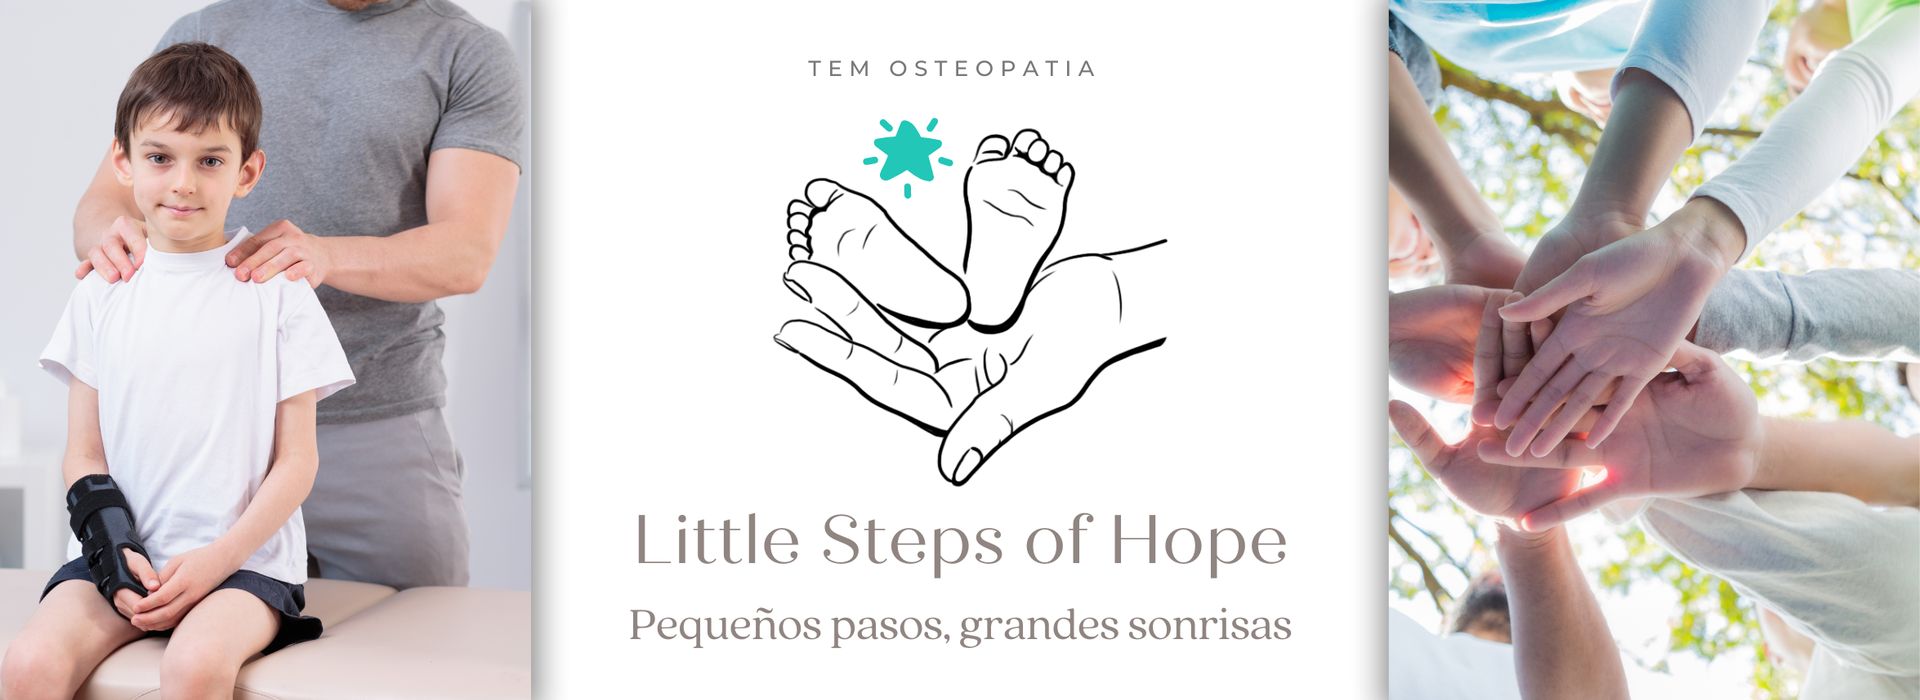 Proyecto de voluntariado Little Steps of Hopen valencia TEM osteopatia Centro Osteopático